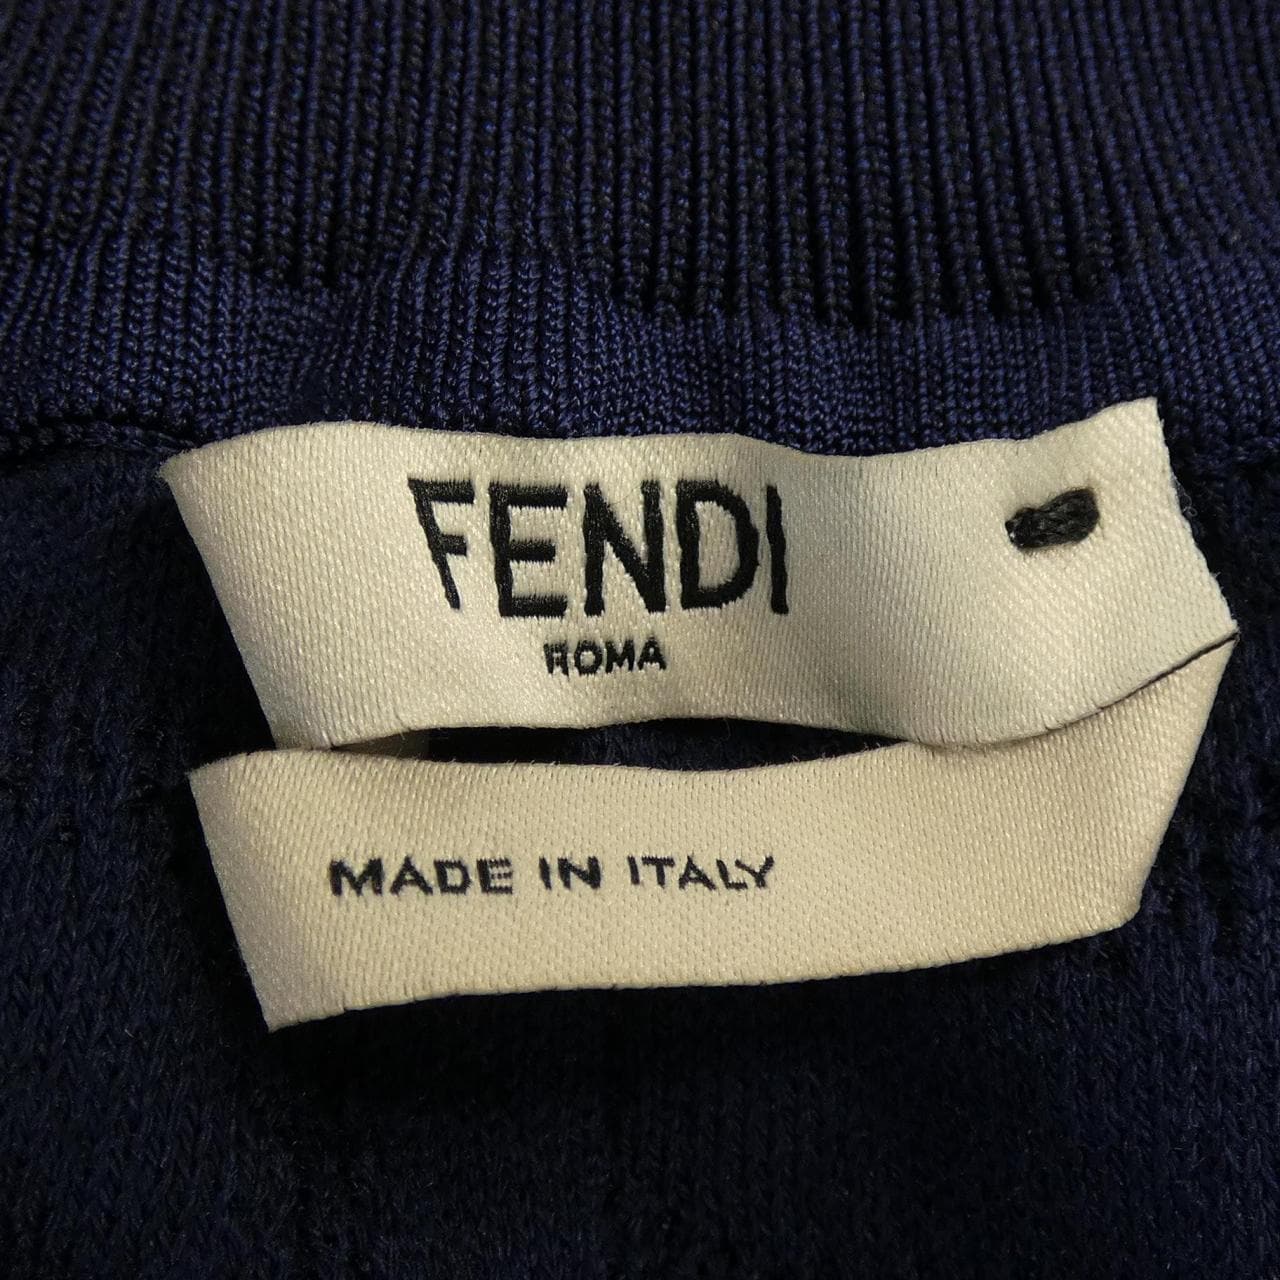 FENDI skirt